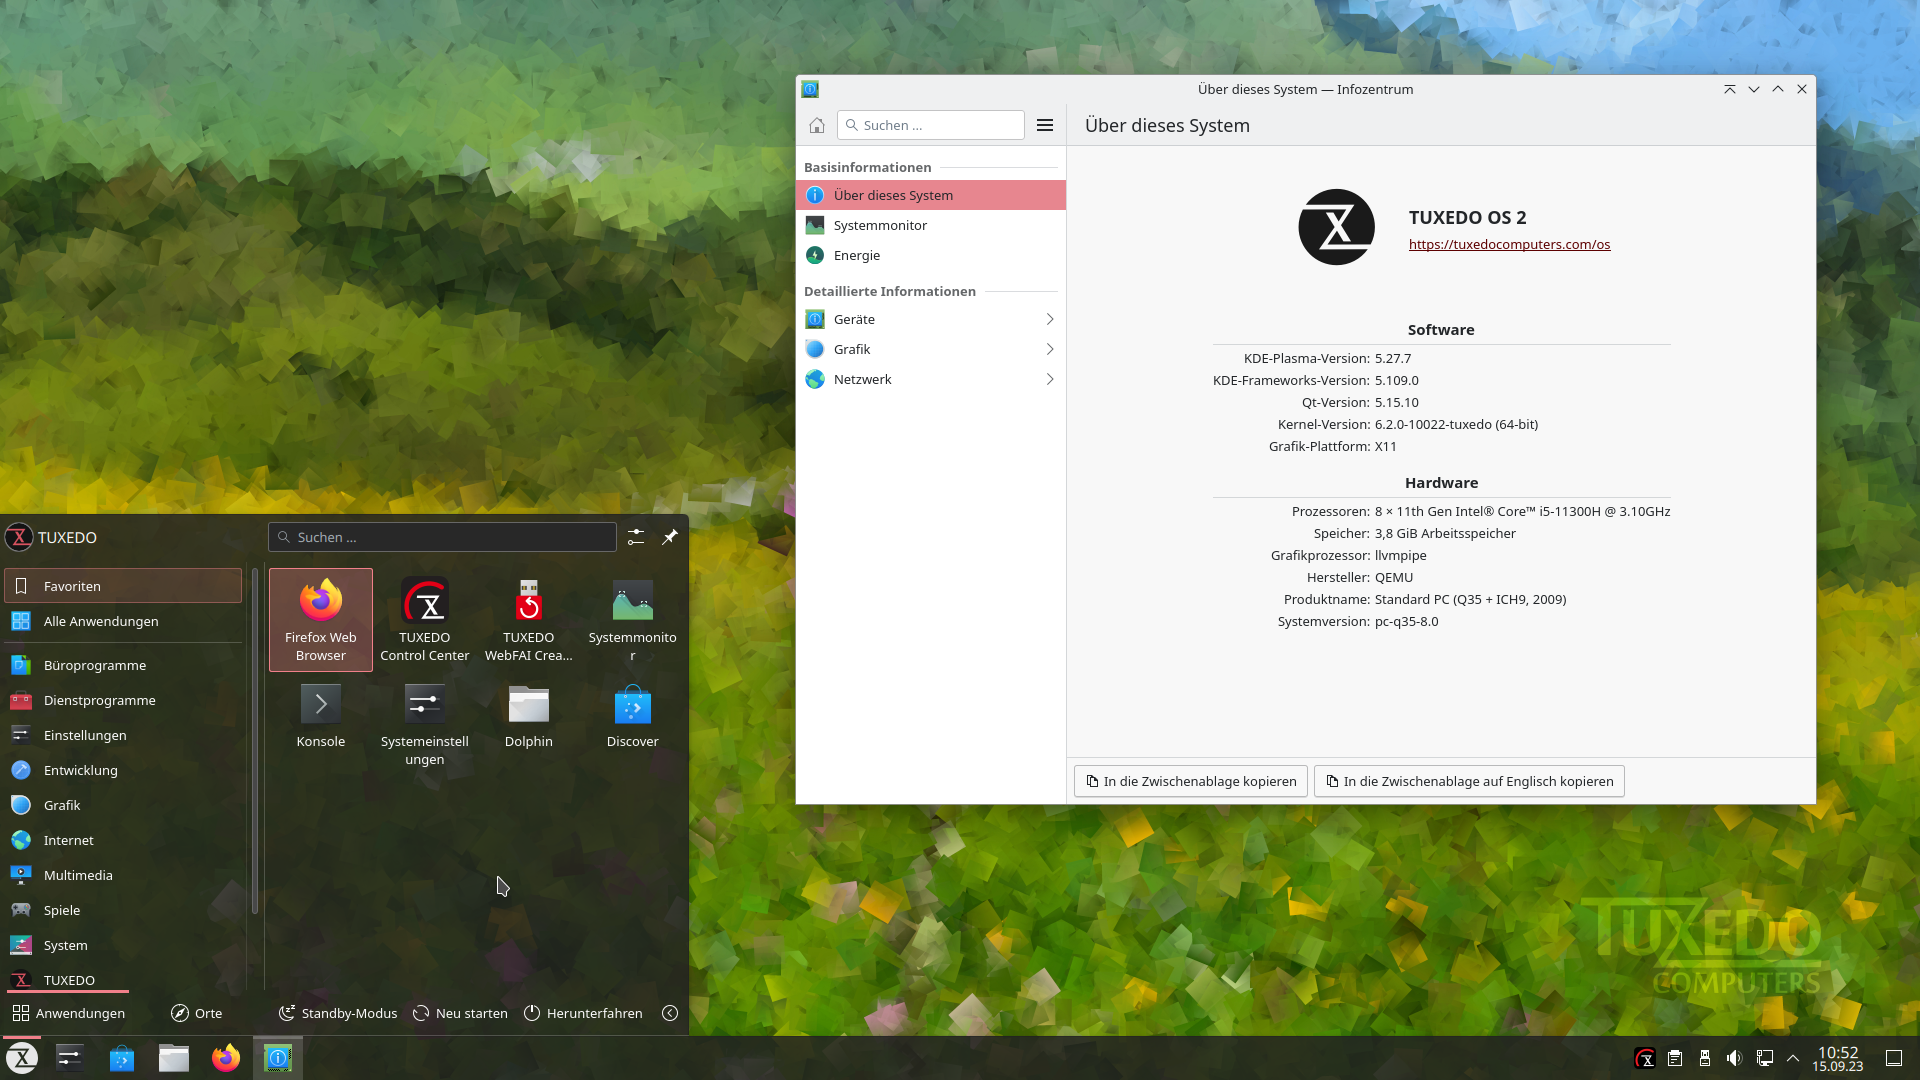 TUXEDO OS 2 mit KDE Plasma 5.27 und Tuxedo-Kernel 6.2.